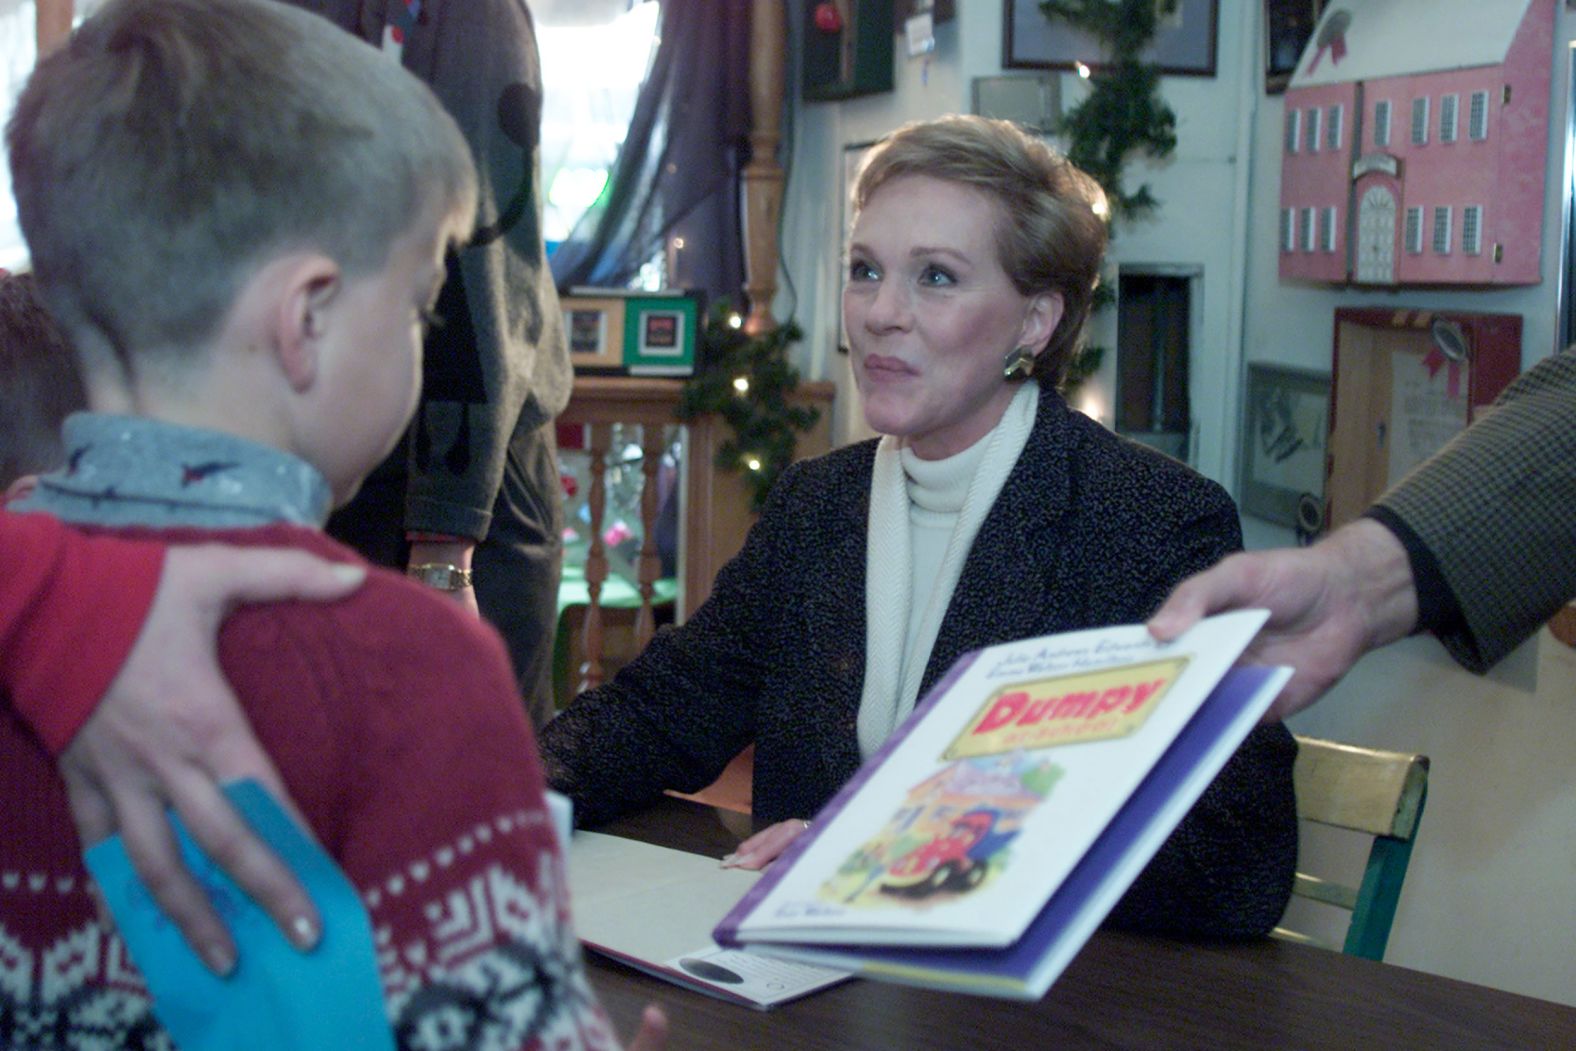 Andrews signs copies of her new children's book, Dumpy, in 2000.